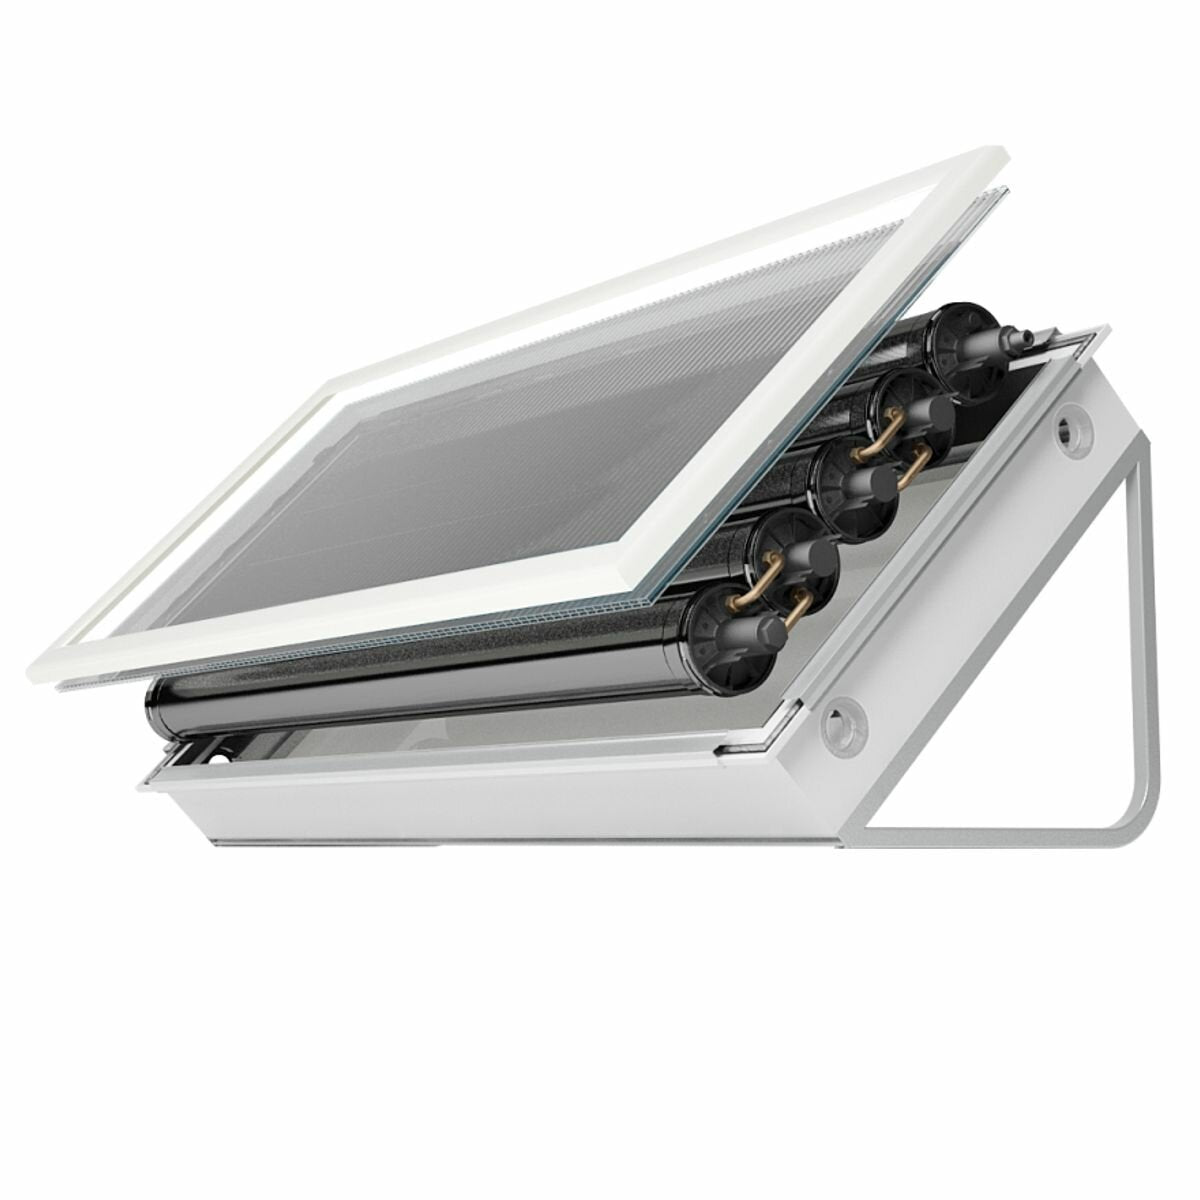 Pleion Ego 110 weißes Solarpanel mit natürlicher Zirkulation, 105 Liter, flaches und geneigtes Dach